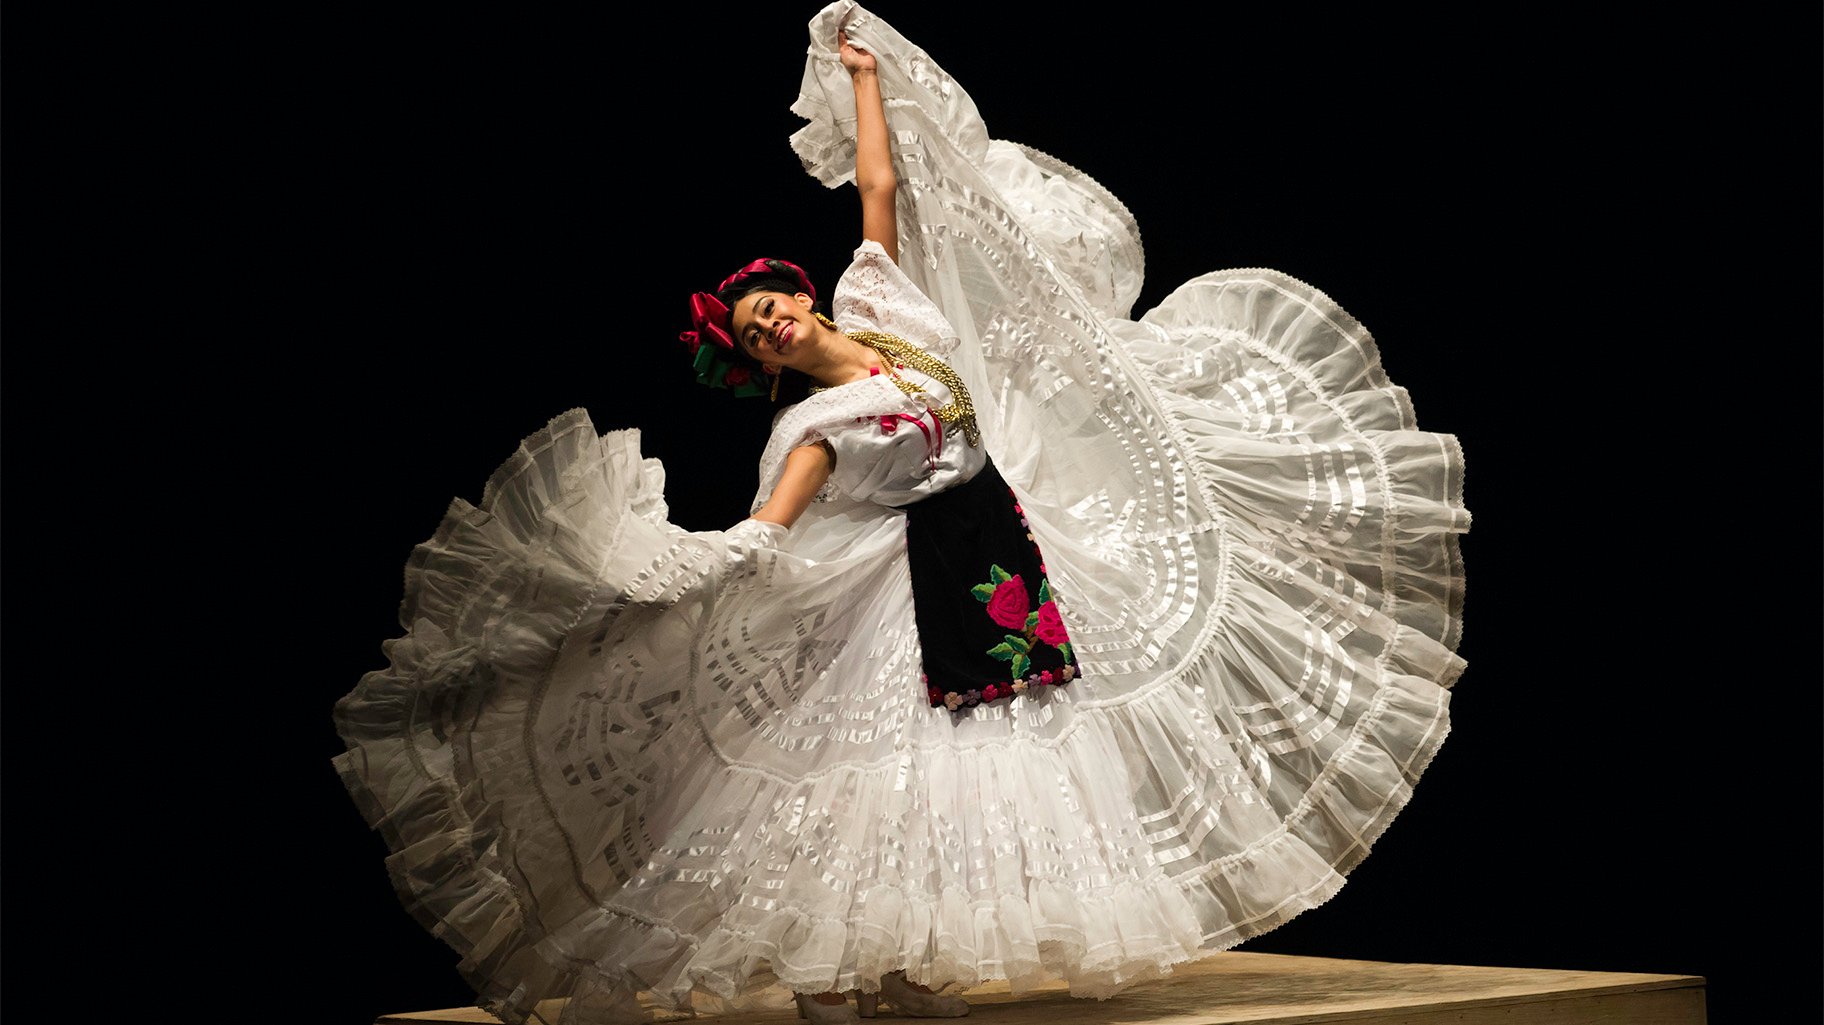 Rituales, Festivales y Música de México inspiran nueva actuación del Ballet Folklórico |  Voces Latinas |  noticias de chicago